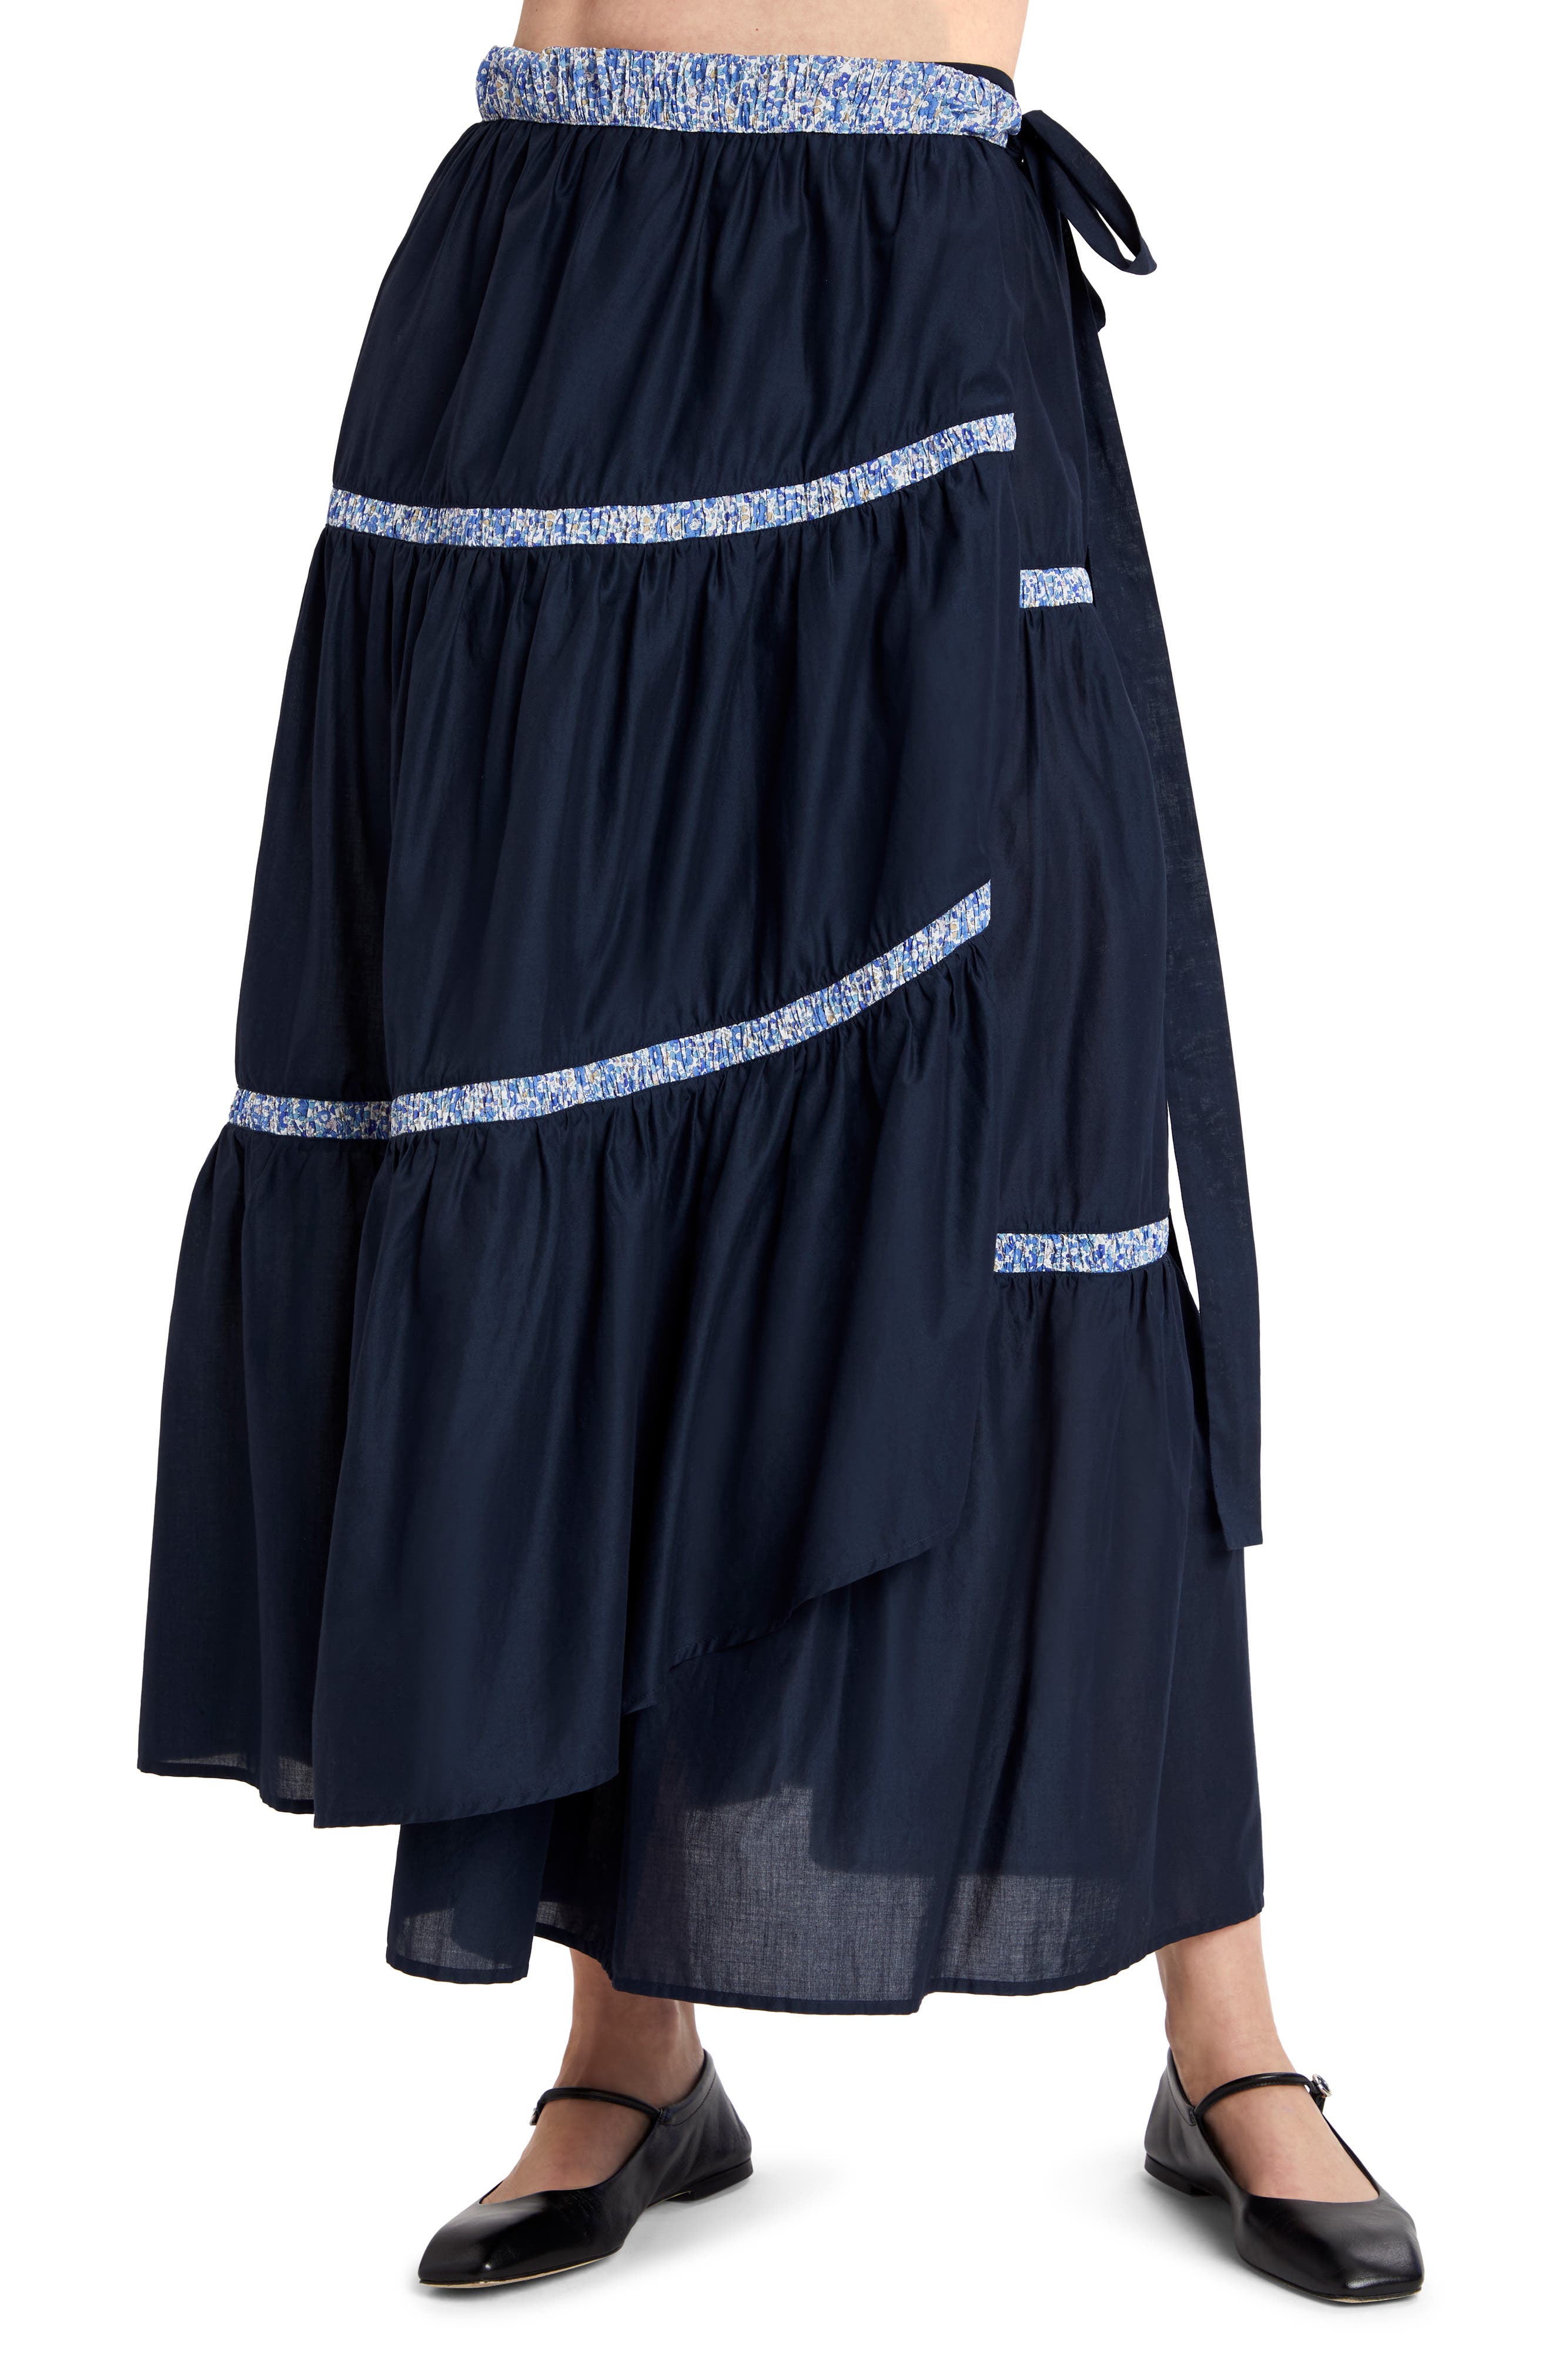 x Liberty London Prins Cotton Lawn Wrap Skirt